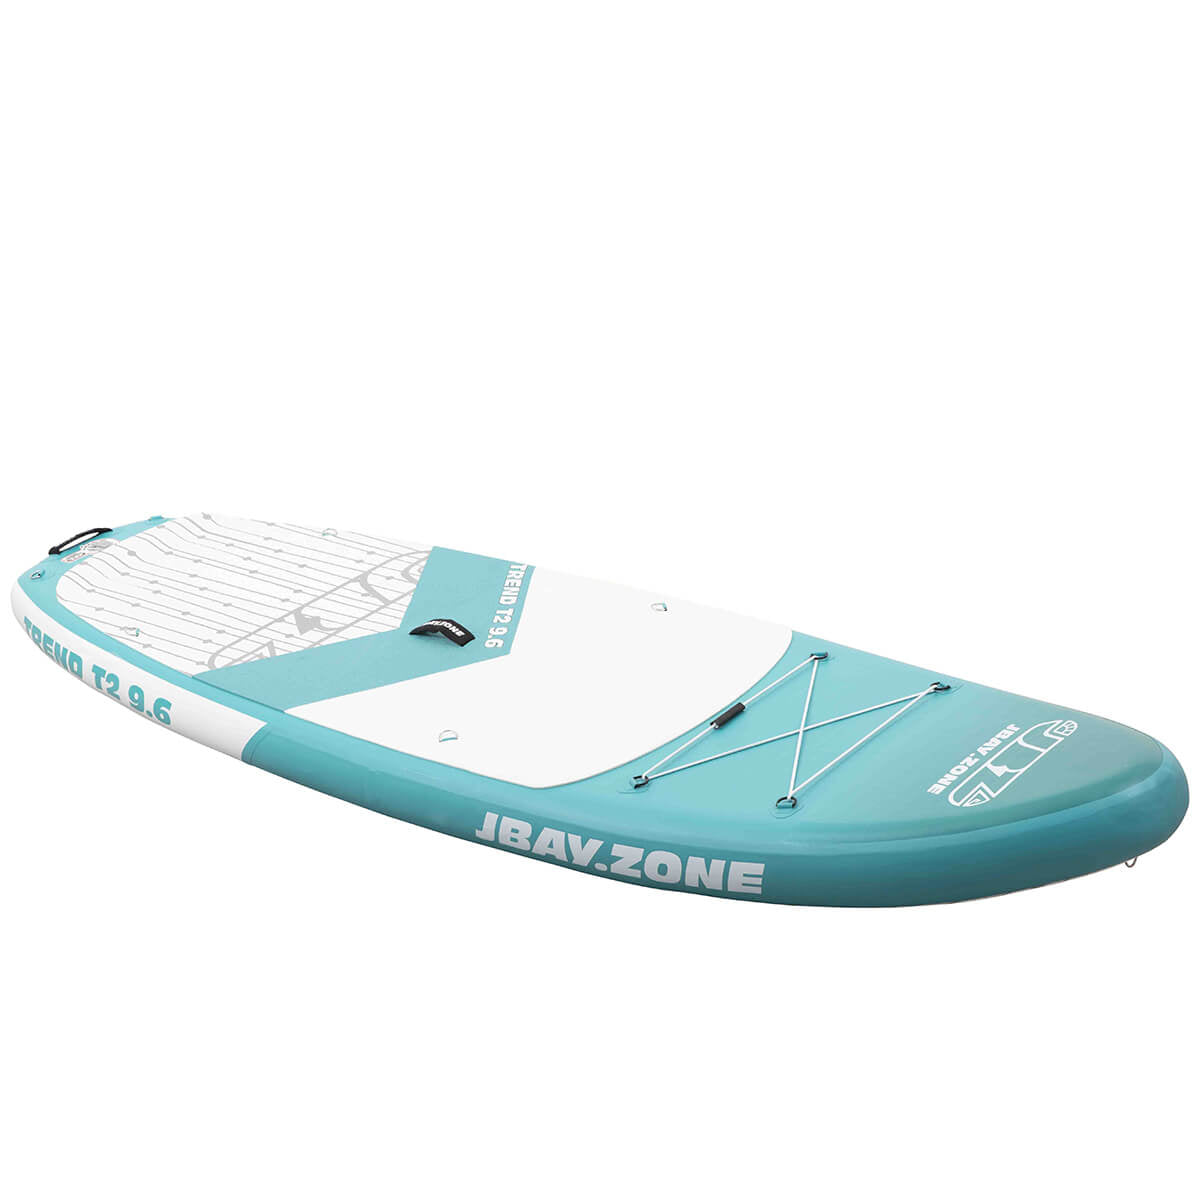 Paddle Board Jbay.Zone Trend T2